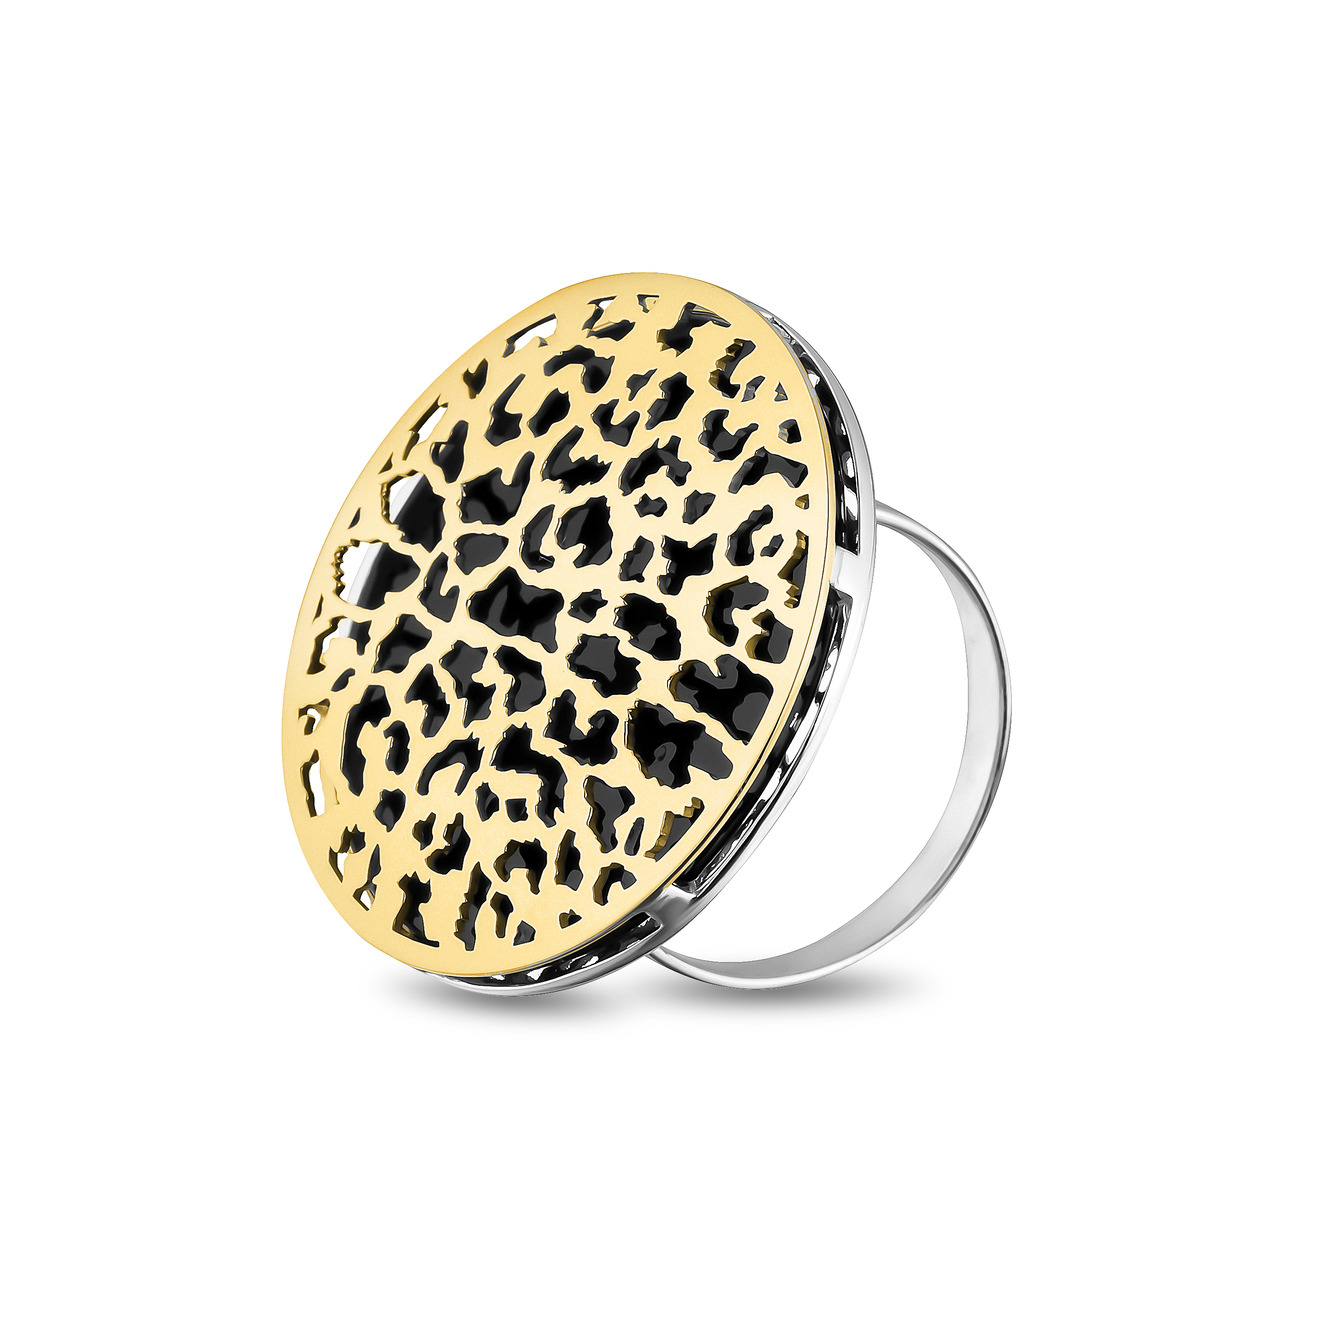 LUTA Jewelry Большое позолоченное кольцо из серебра c леопардовым узором luta jewelry позолоченное кольцо из серебра c леопардовым узором